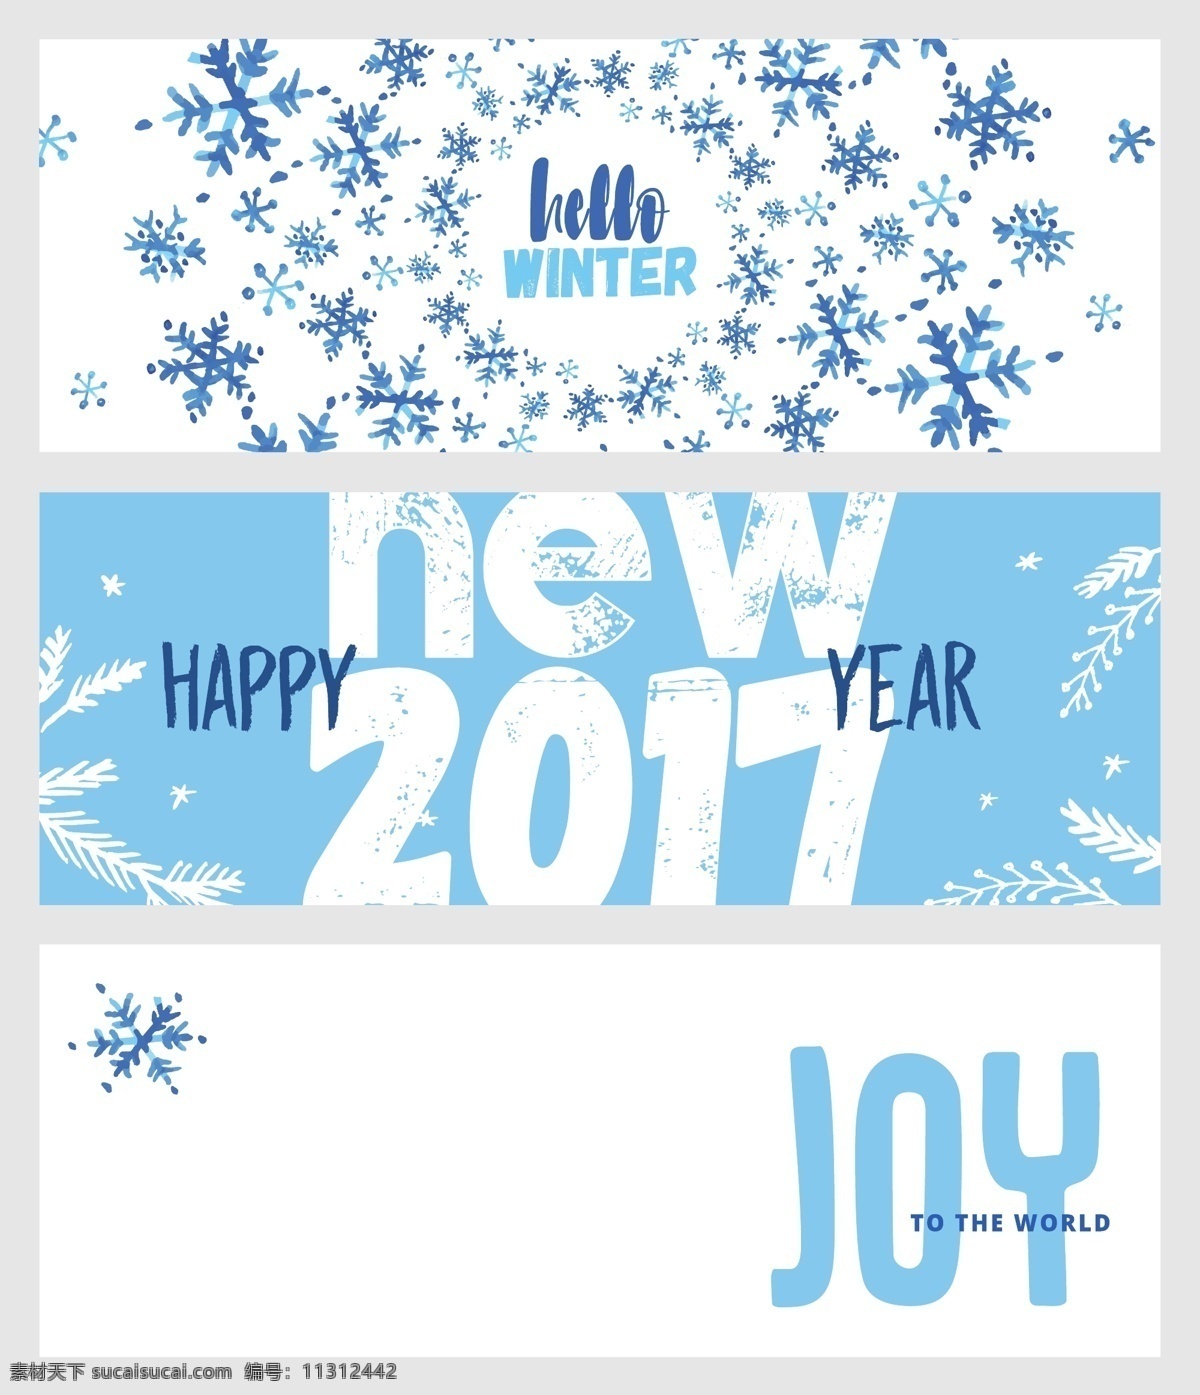 蓝色 雪花 背景 2017 年 圣诞 新年 横幅 海报 小清新 节日 创意 banner 标牌 咖啡色 英文 白色 丝带 矢量素材 海报素材